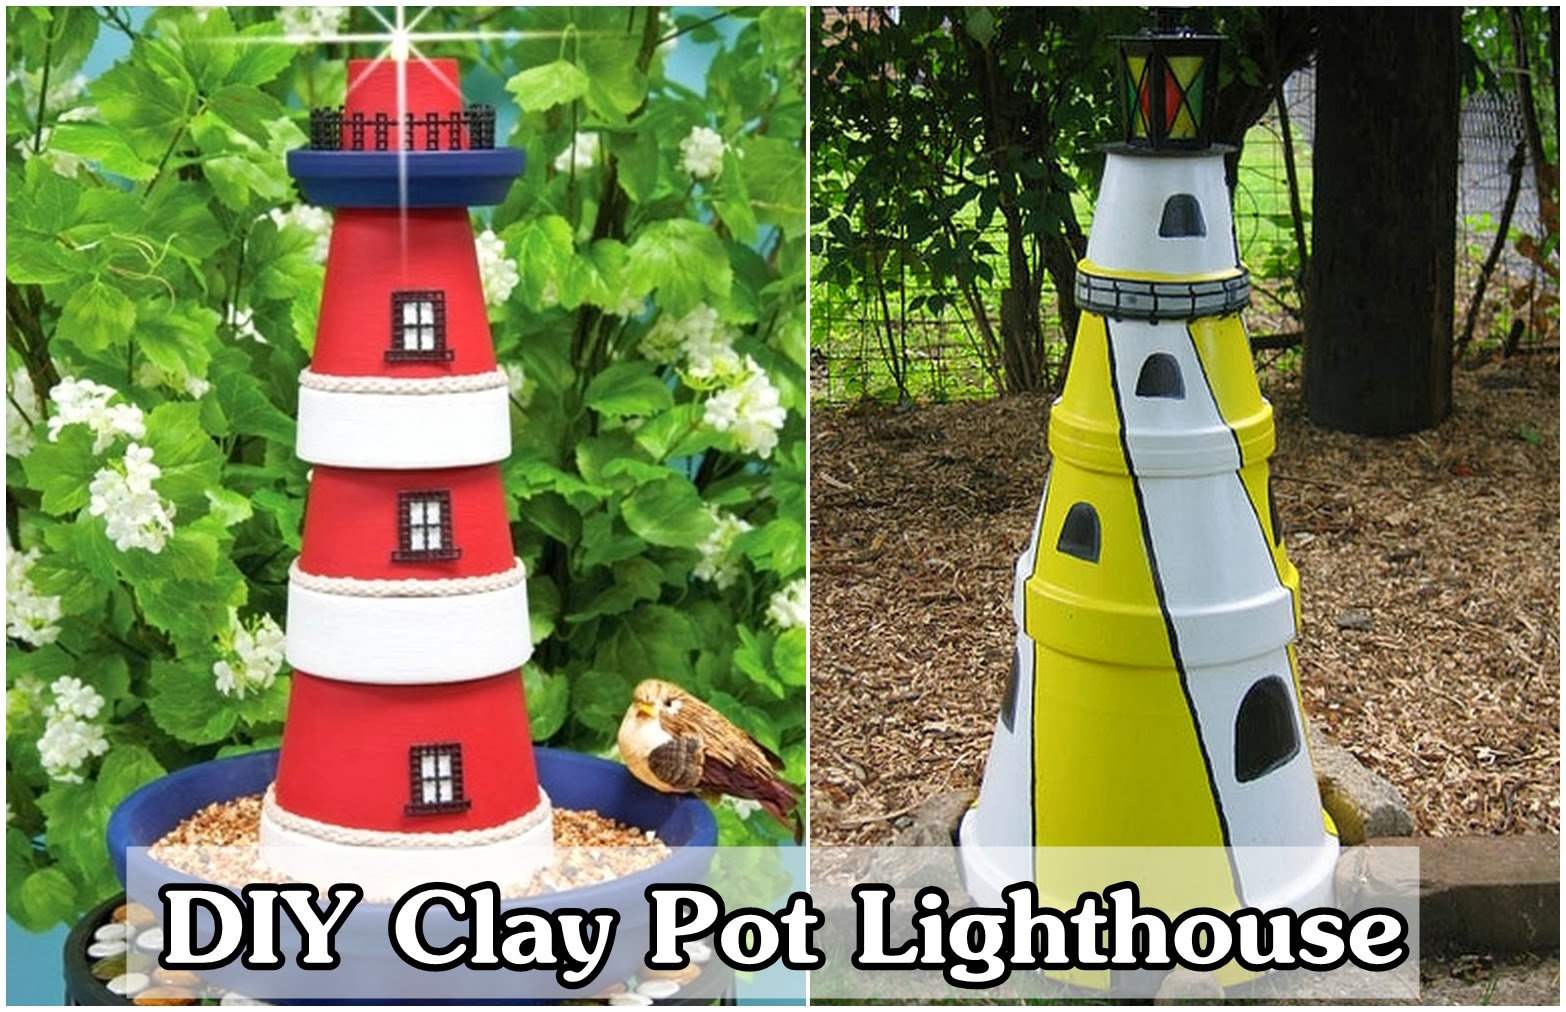 DIY Make a Clay Pot Lighthouse